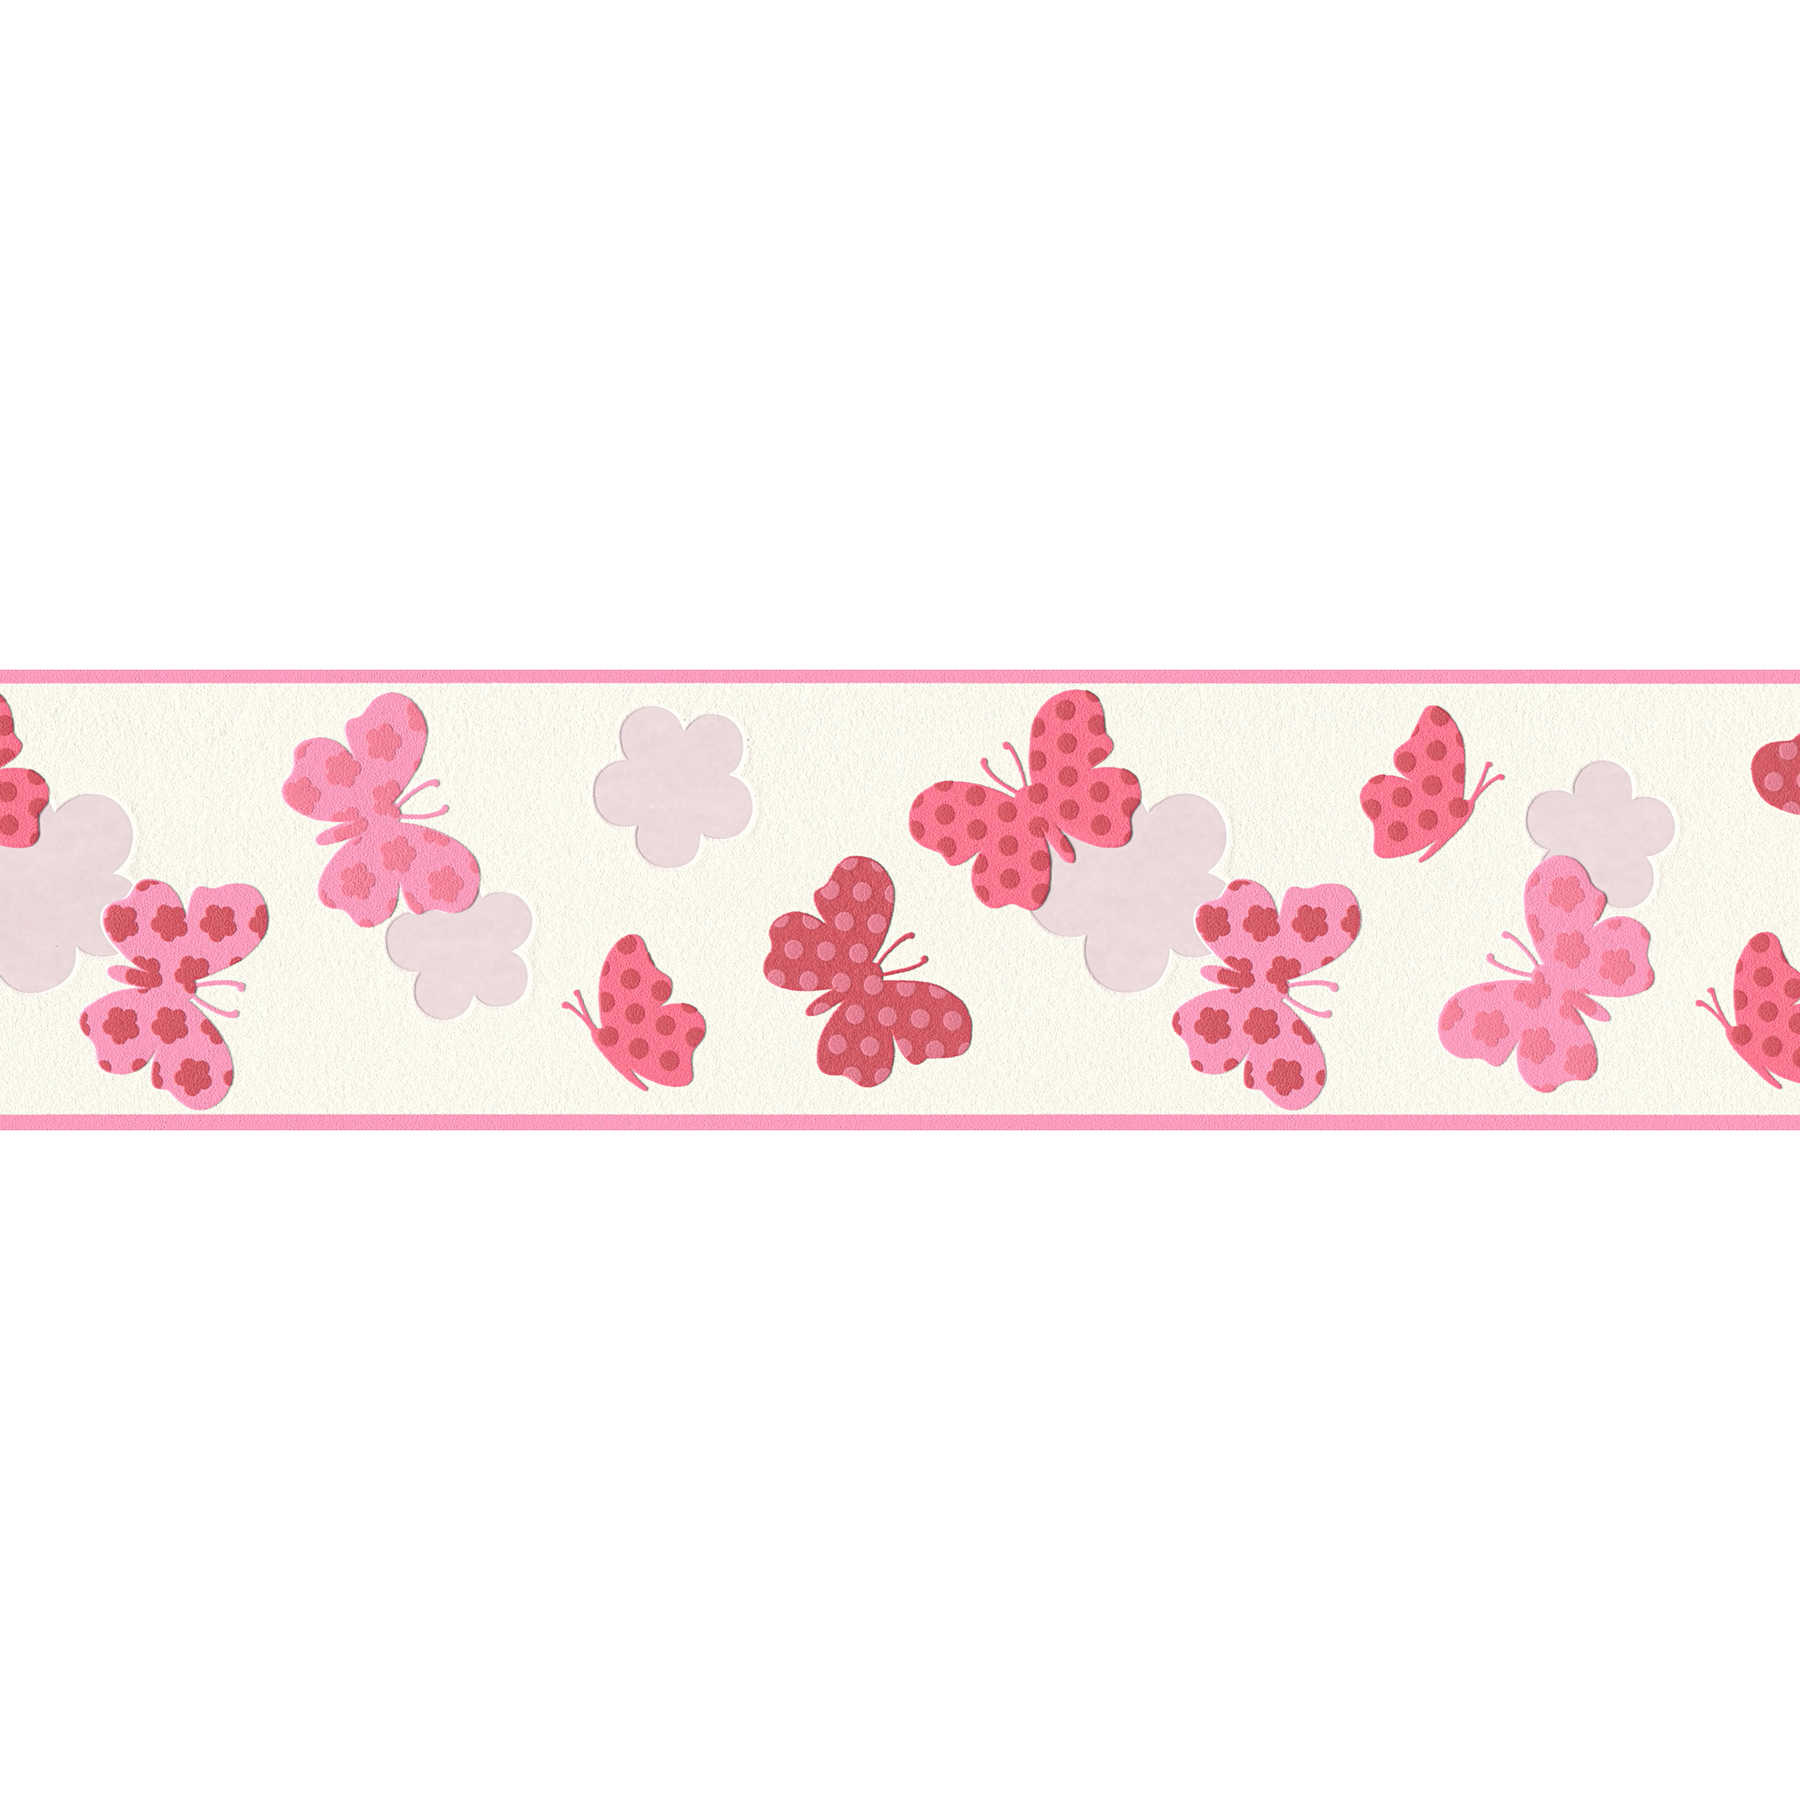 Behang rand vlinder voor meisjes - roze, wit
